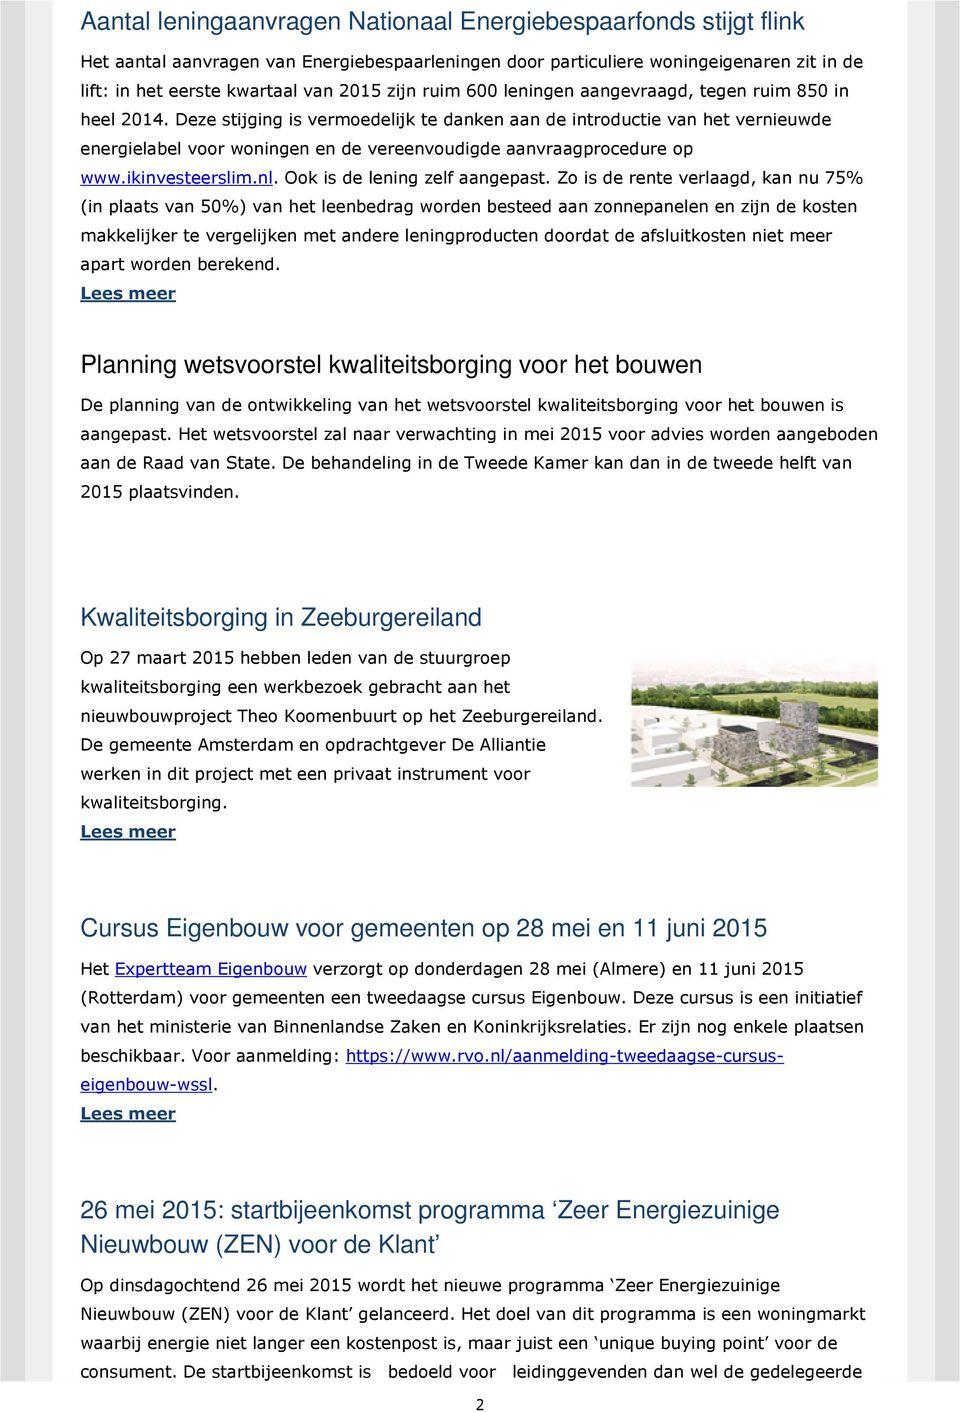 Deze stijging is vermoedelijk te danken aan de introductie van het vernieuwde energielabel voor woningen en de vereenvoudigde aanvraagprocedure op www.ikinvesteerslim.nl.